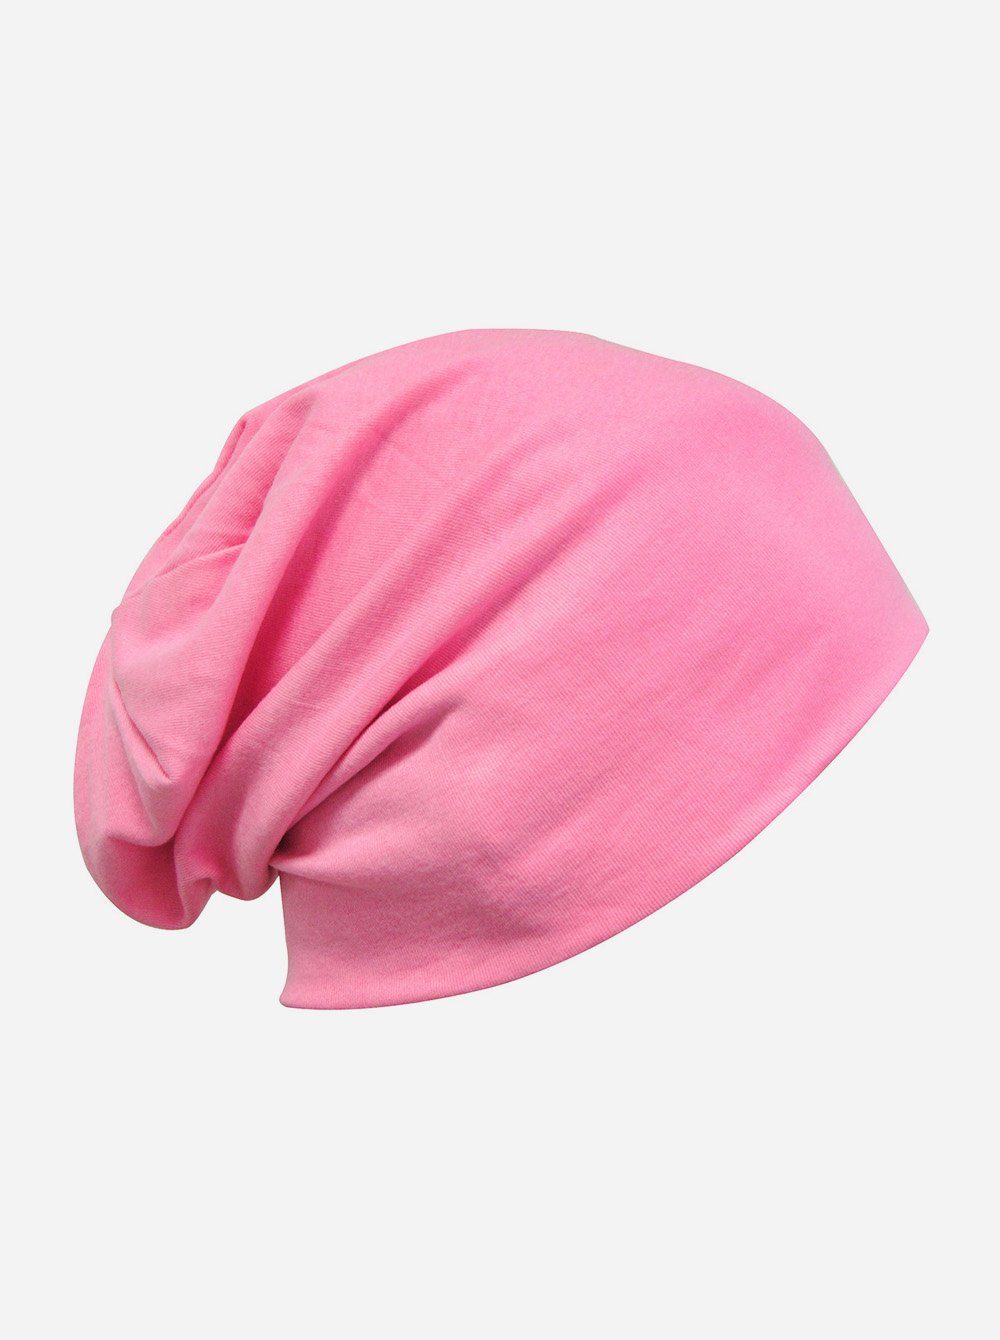 axy Beanie Slouch Beanie Pink Beanie Uni Herren Damen Uni Mütze klassischer Mütze Slouch